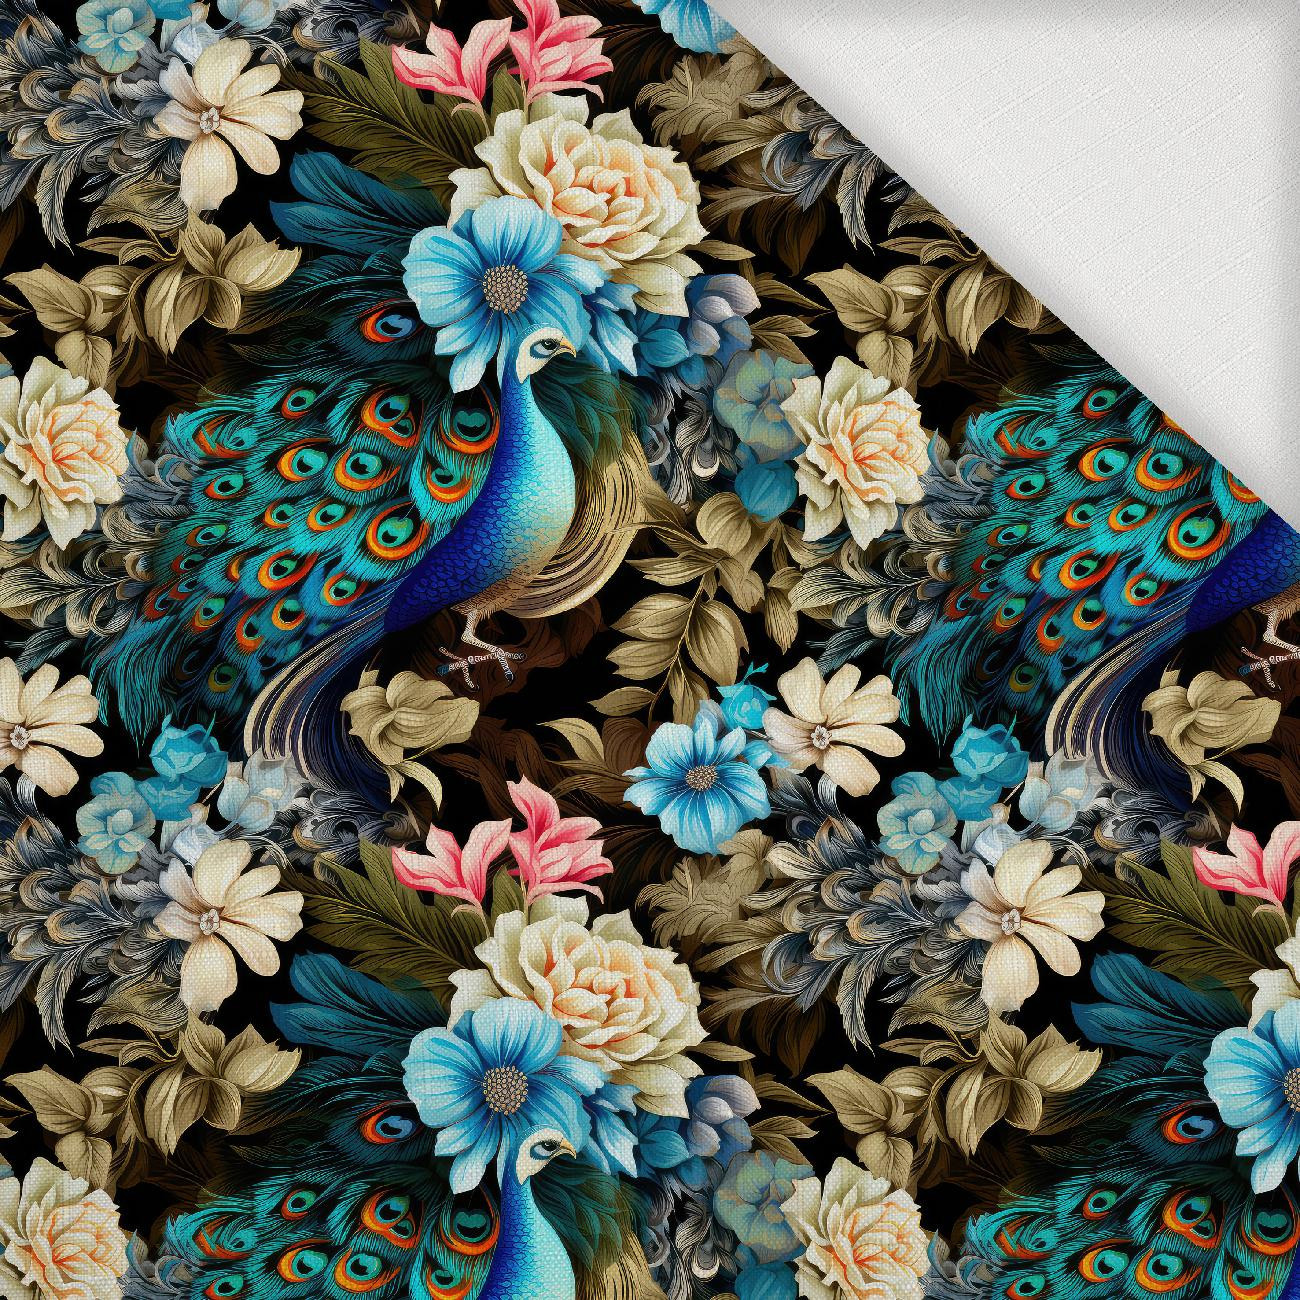 Botanical garden wz.3 - Woven Fabric for tablecloths